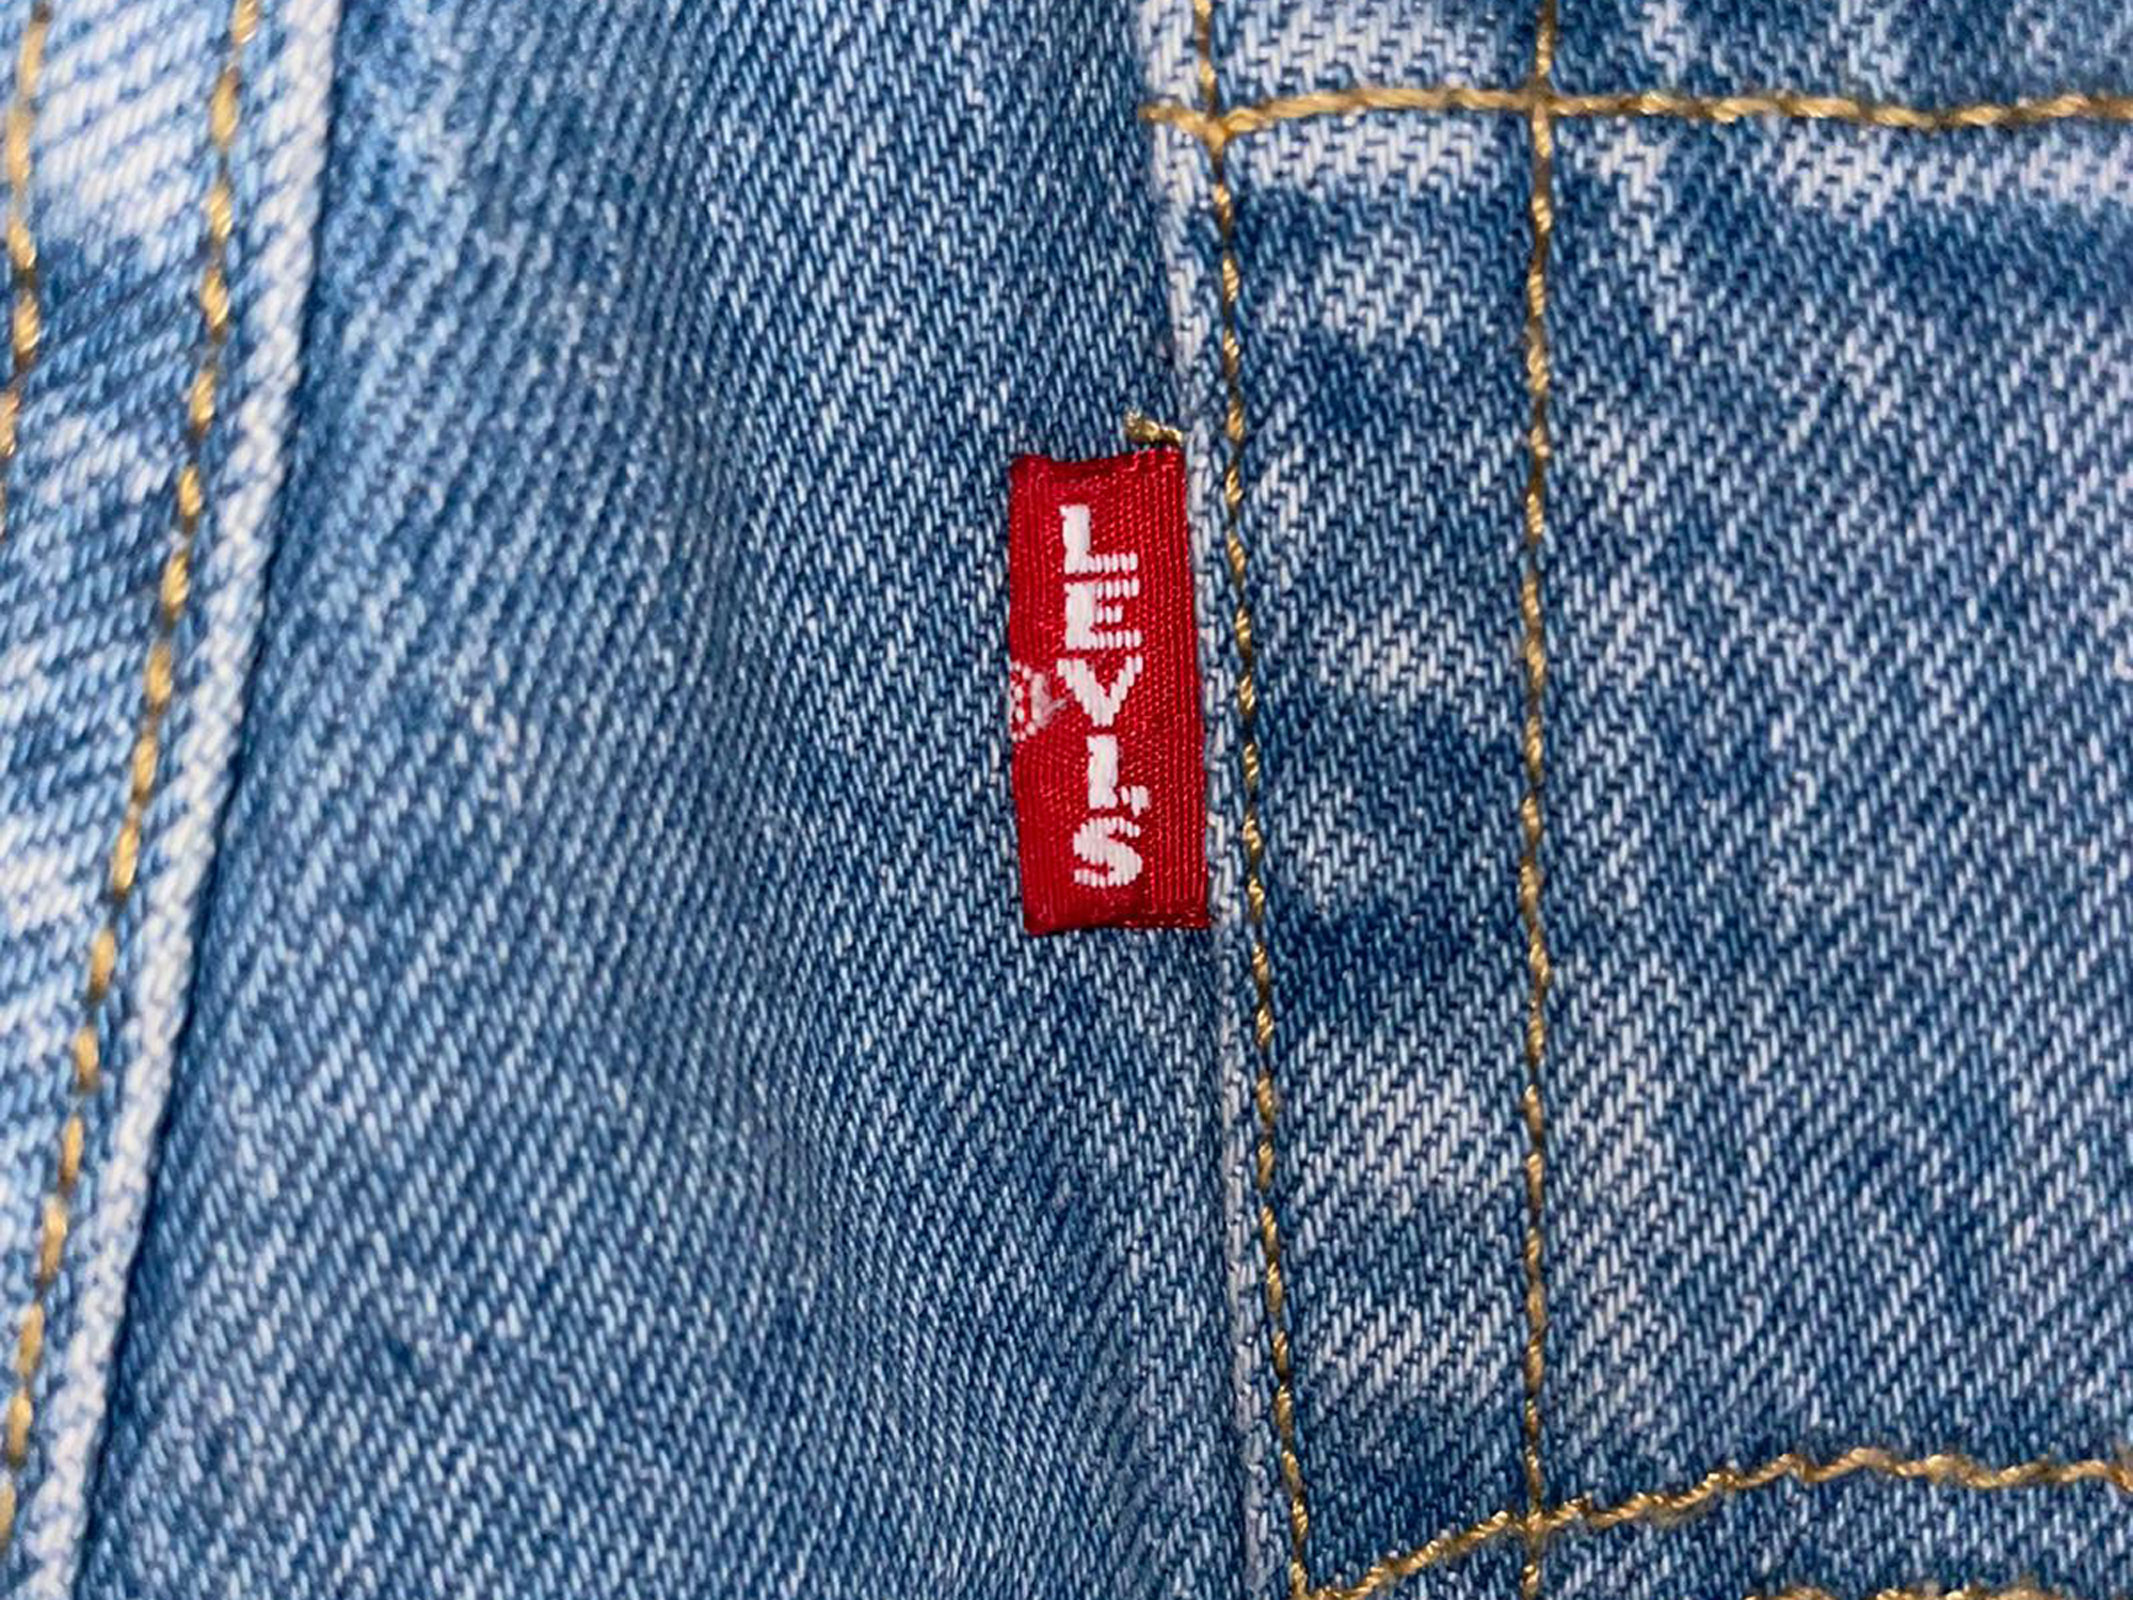 Rotes Fähnchen als Markenzeichen der Levi´s Jeans